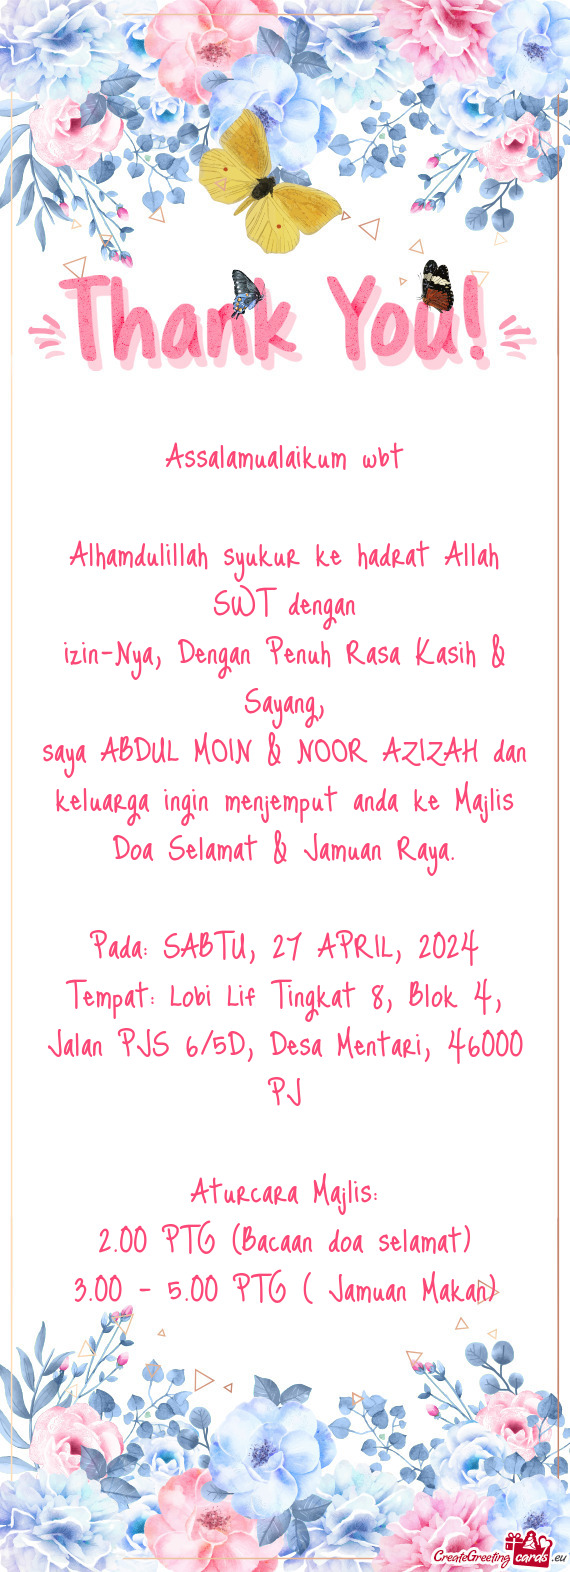 Saya ABDUL MOIN & NOOR AZIZAH dan keluarga ingin menjemput anda ke Majlis Doa Selamat & Jamuan Raya